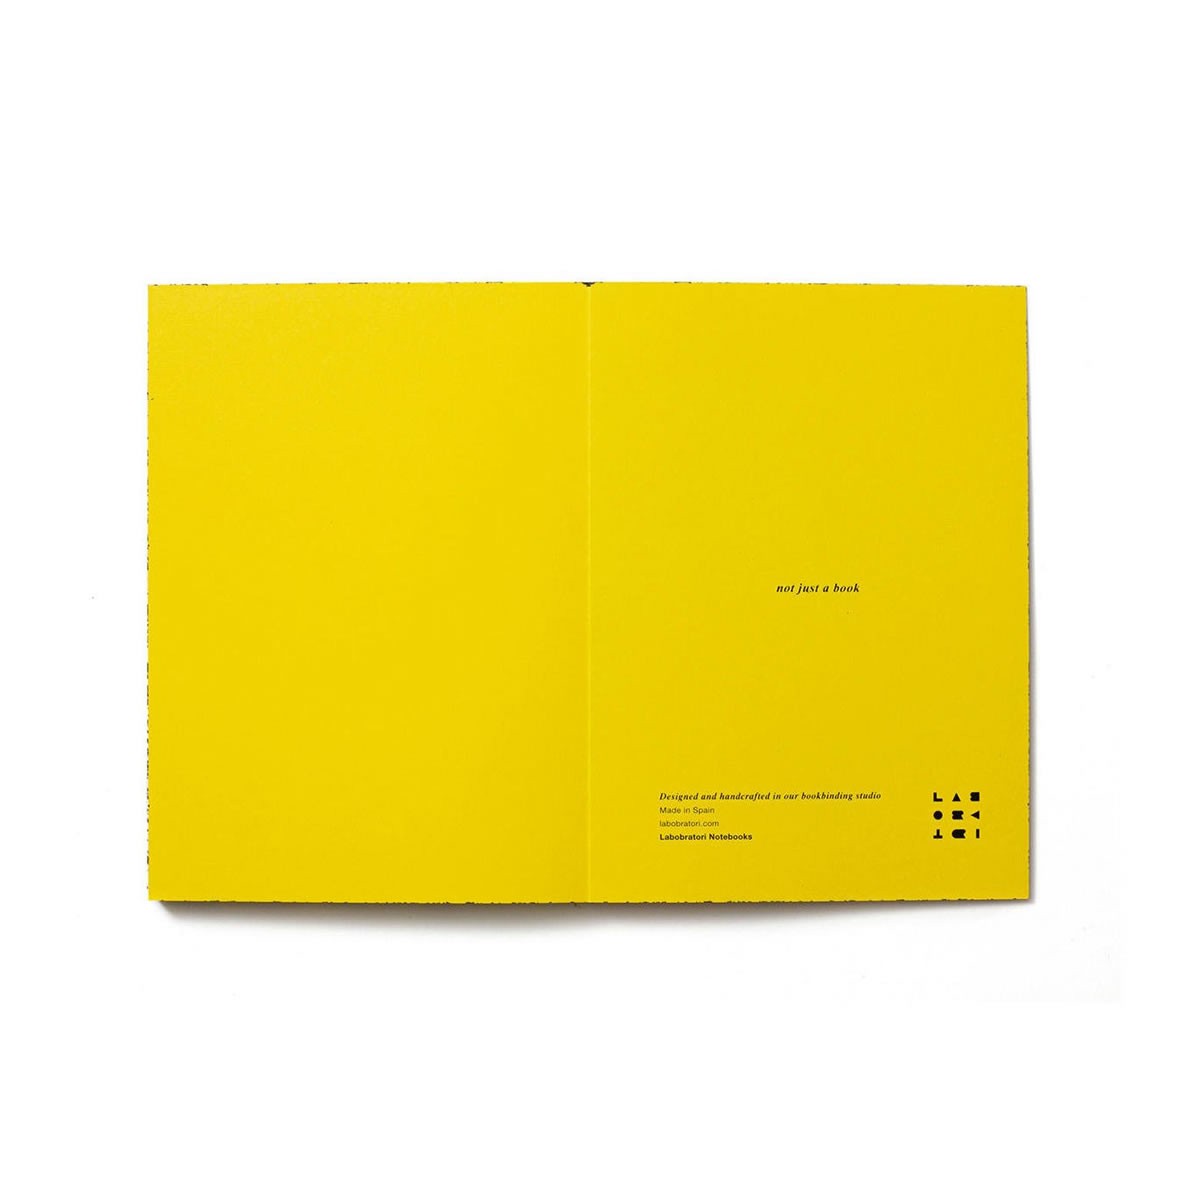 Σημειωματάριο Spray Splash Κίτρινο Μαλακό Εξώφυλλο 13x18